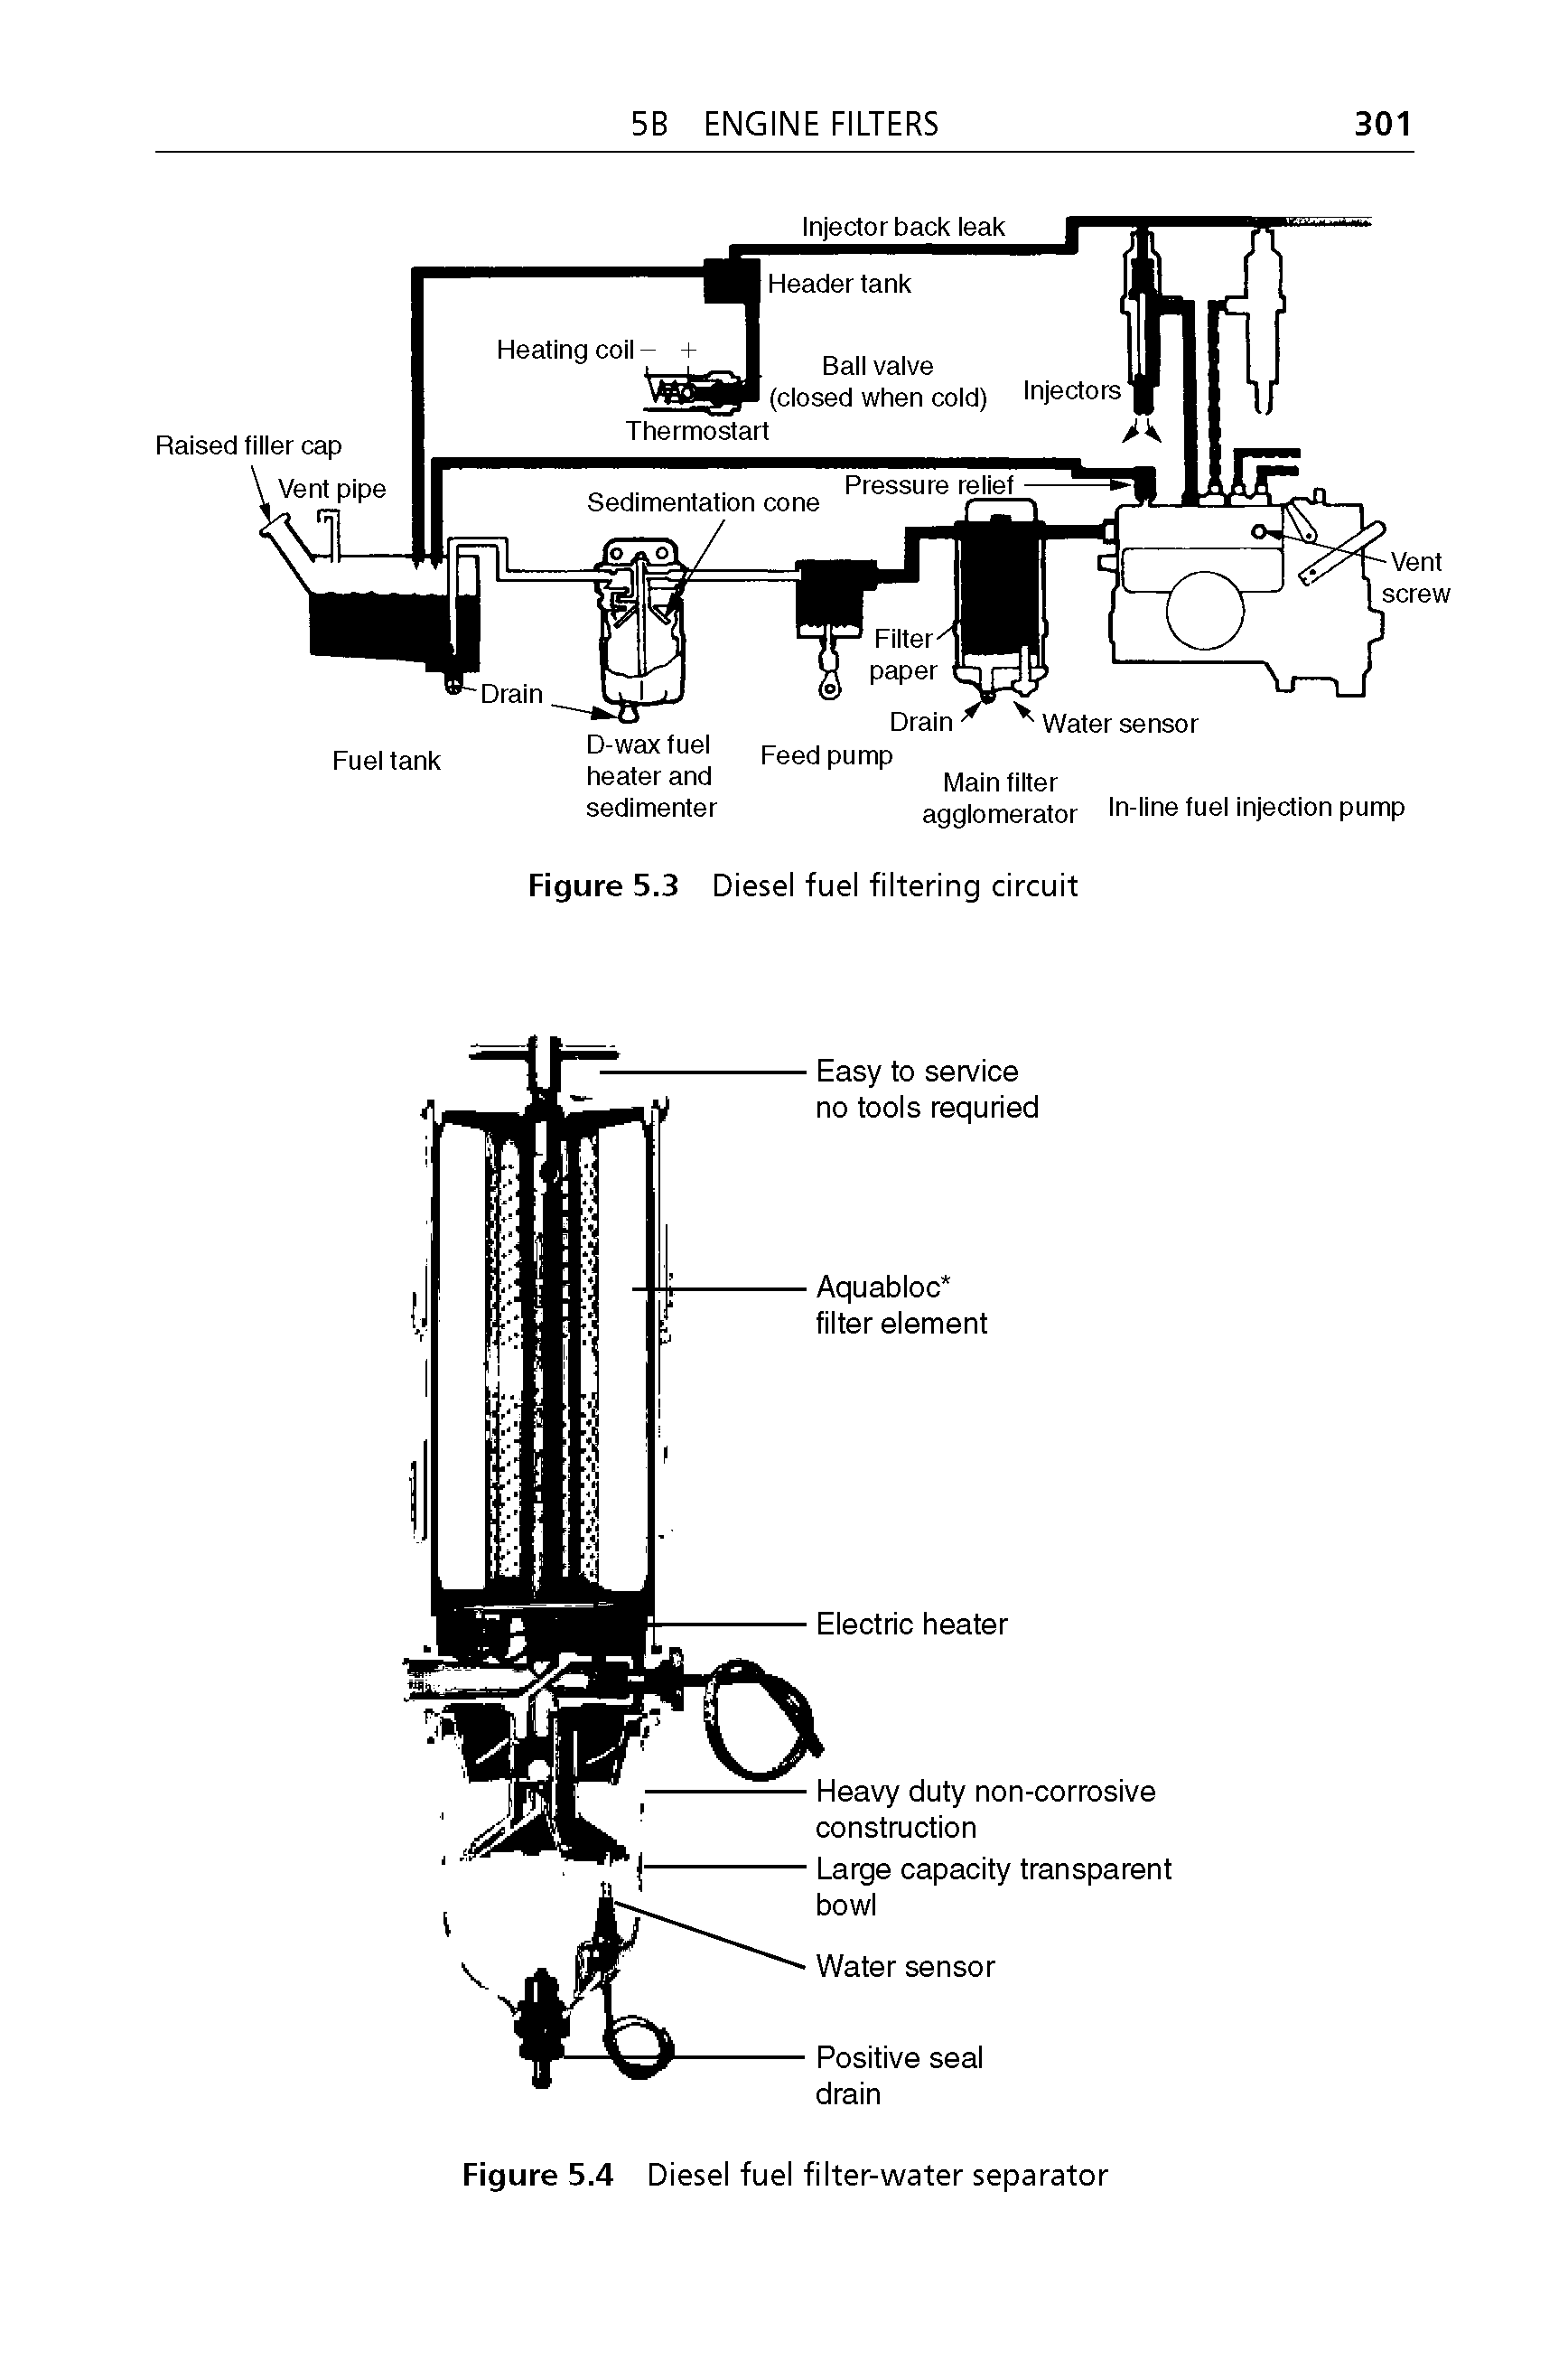 Figure 5.4 Diesel fuel filter-water separator...